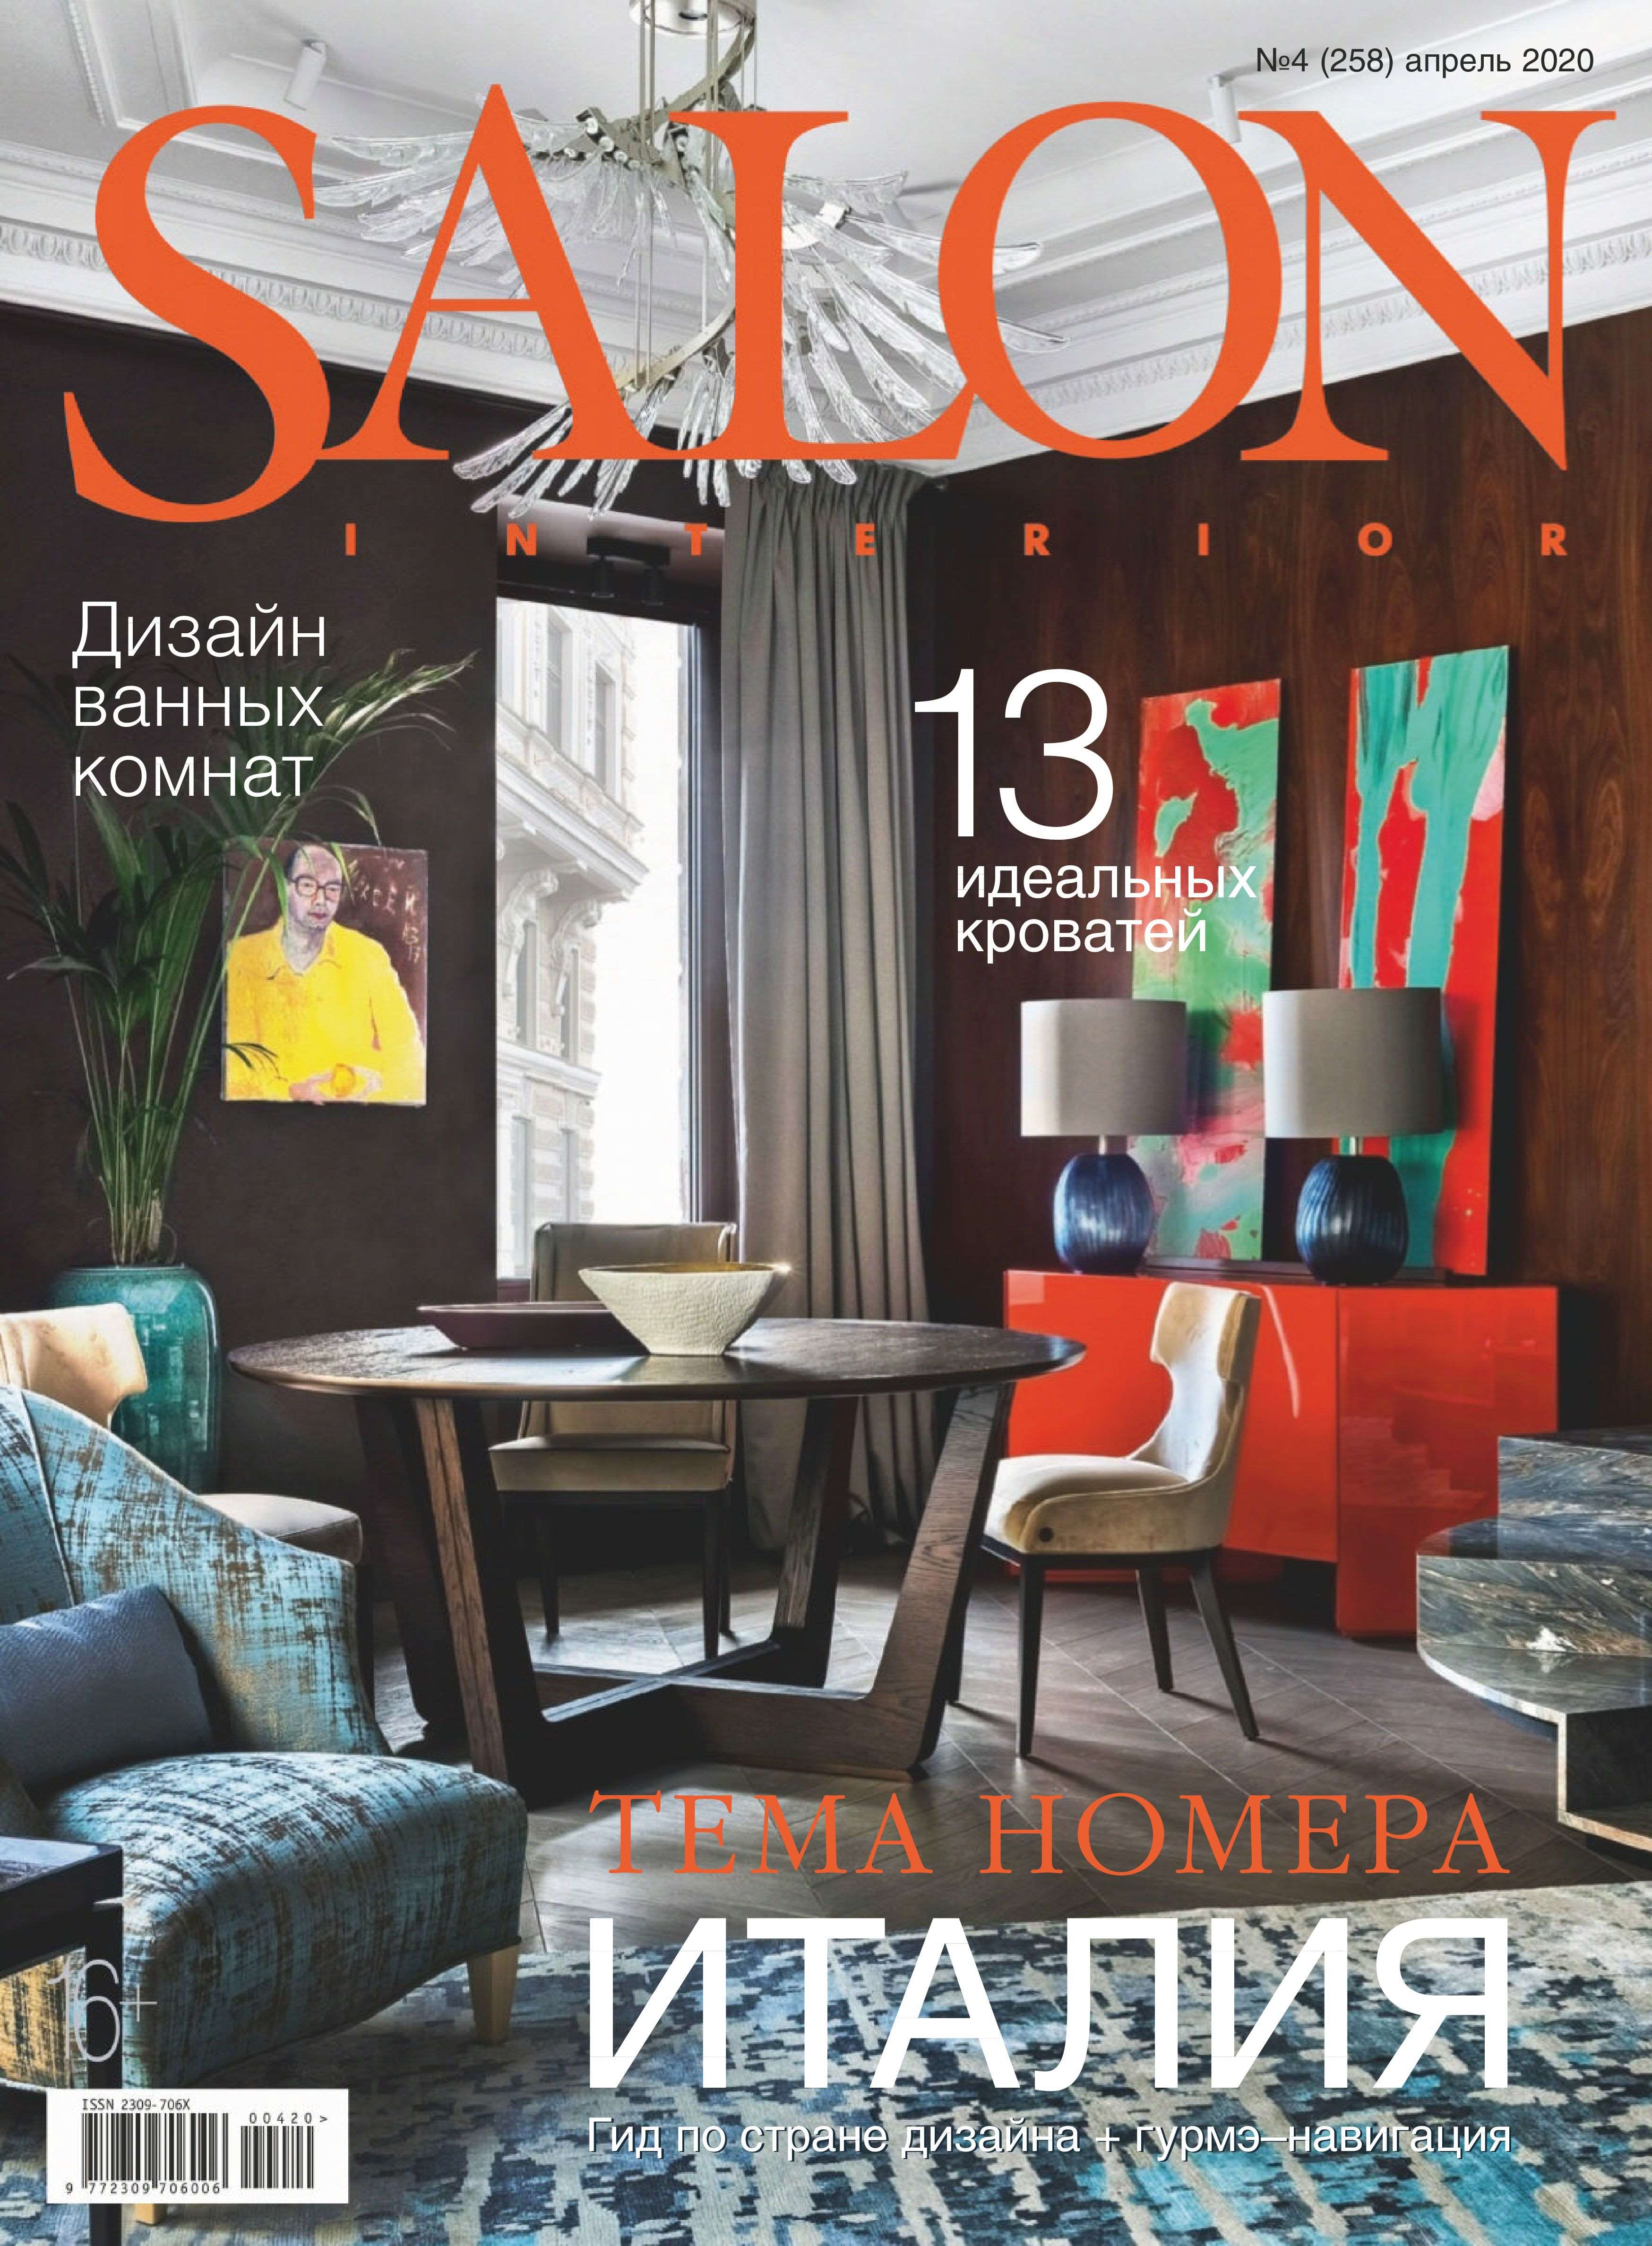 Salon Russia April 2020